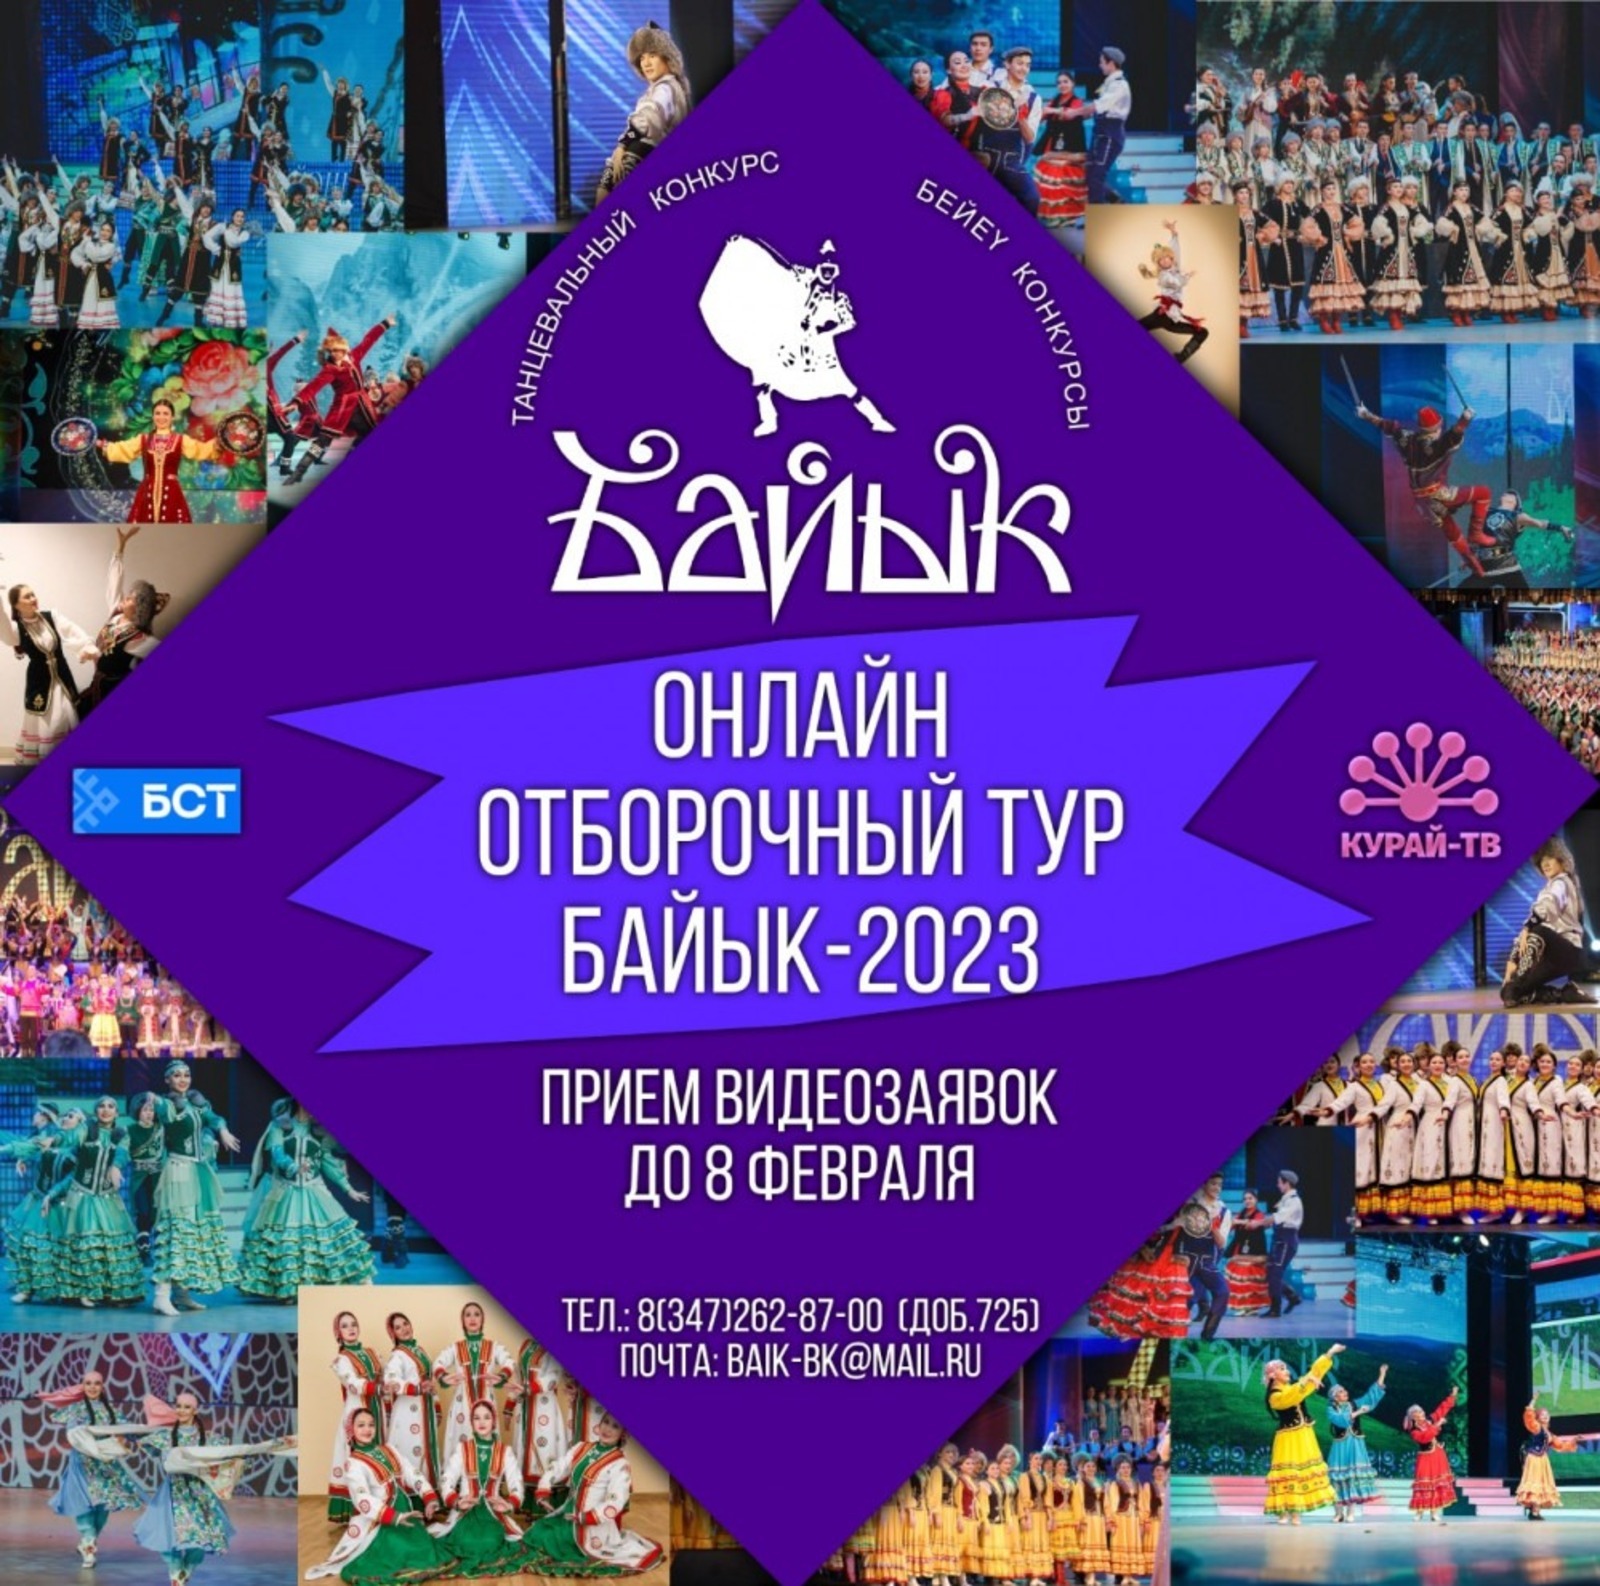 Начался приём заявок на республиканский конкурс башкирского танца «Байык – 2023»